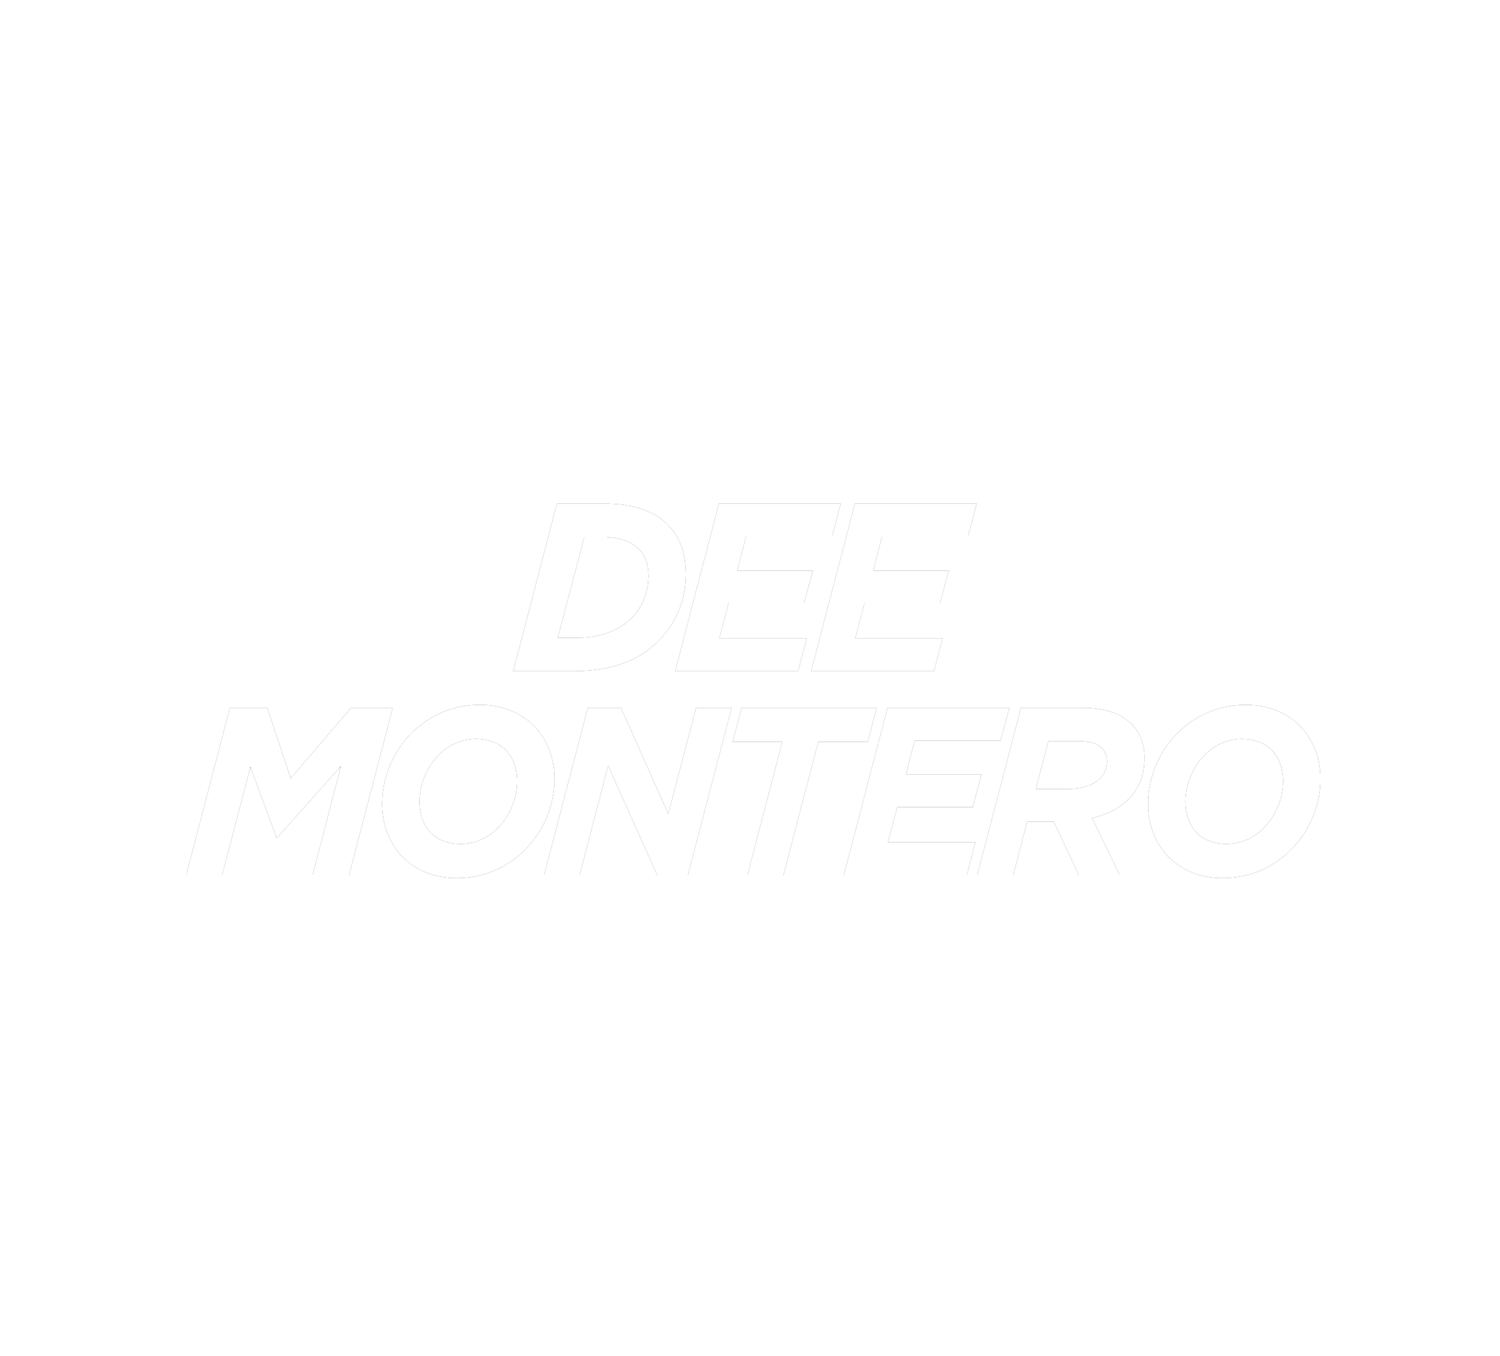 Dee Montero